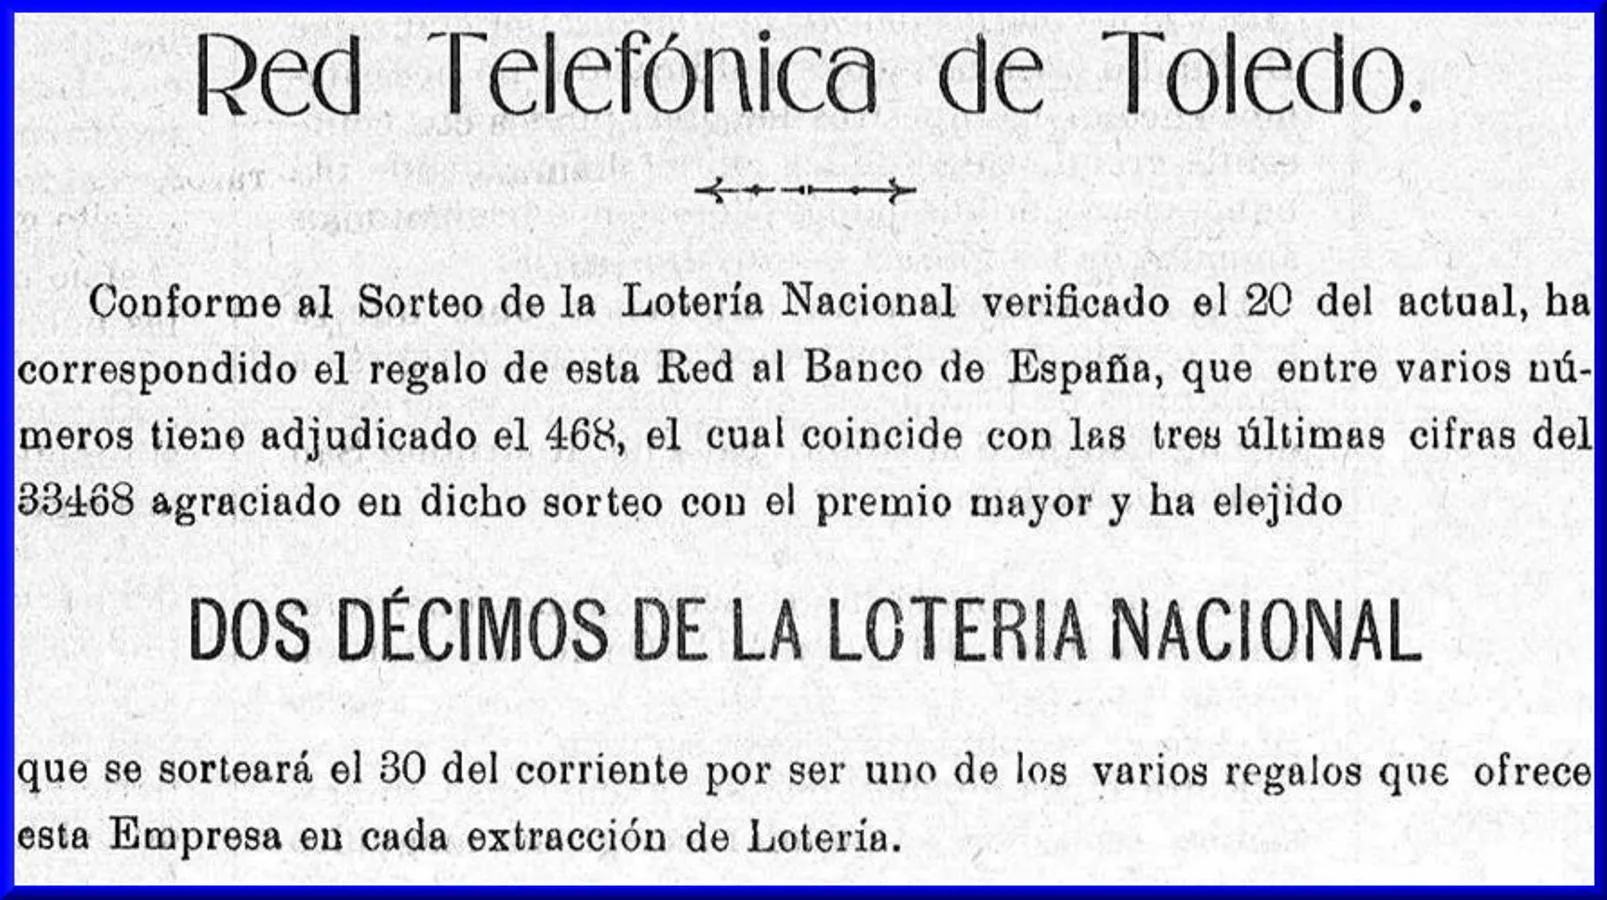 Promoción comercial de la Red Telefónica de Toledo en 1907